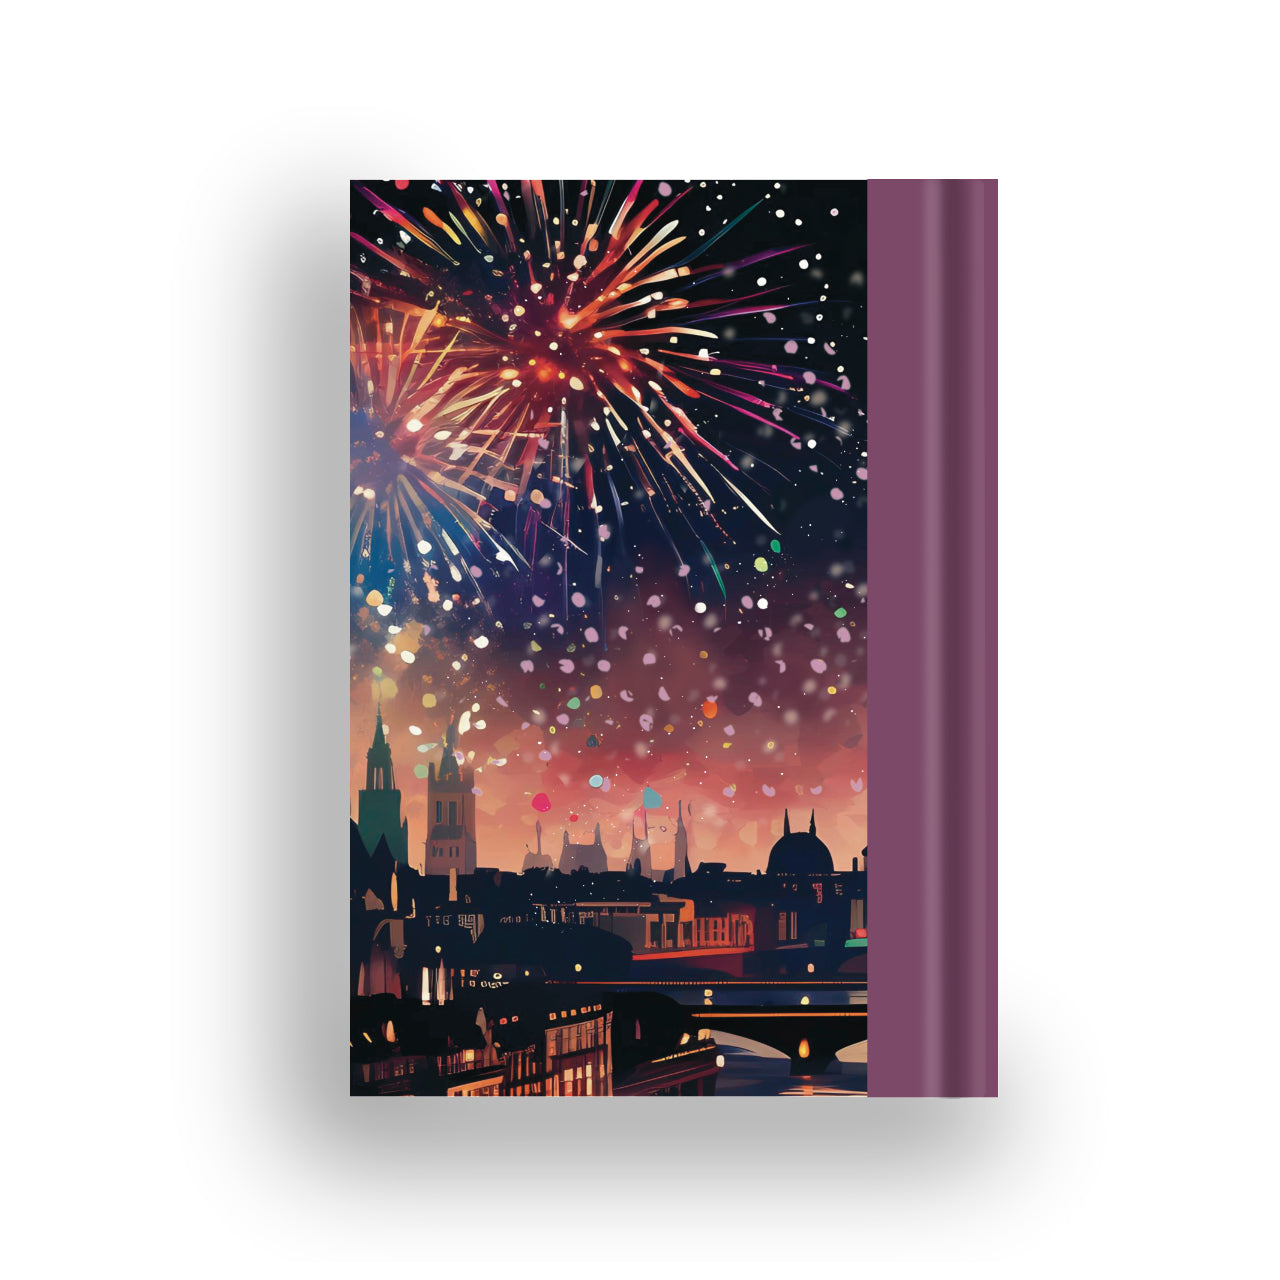 Firework notebook back cover displaying vibrant fireworks design